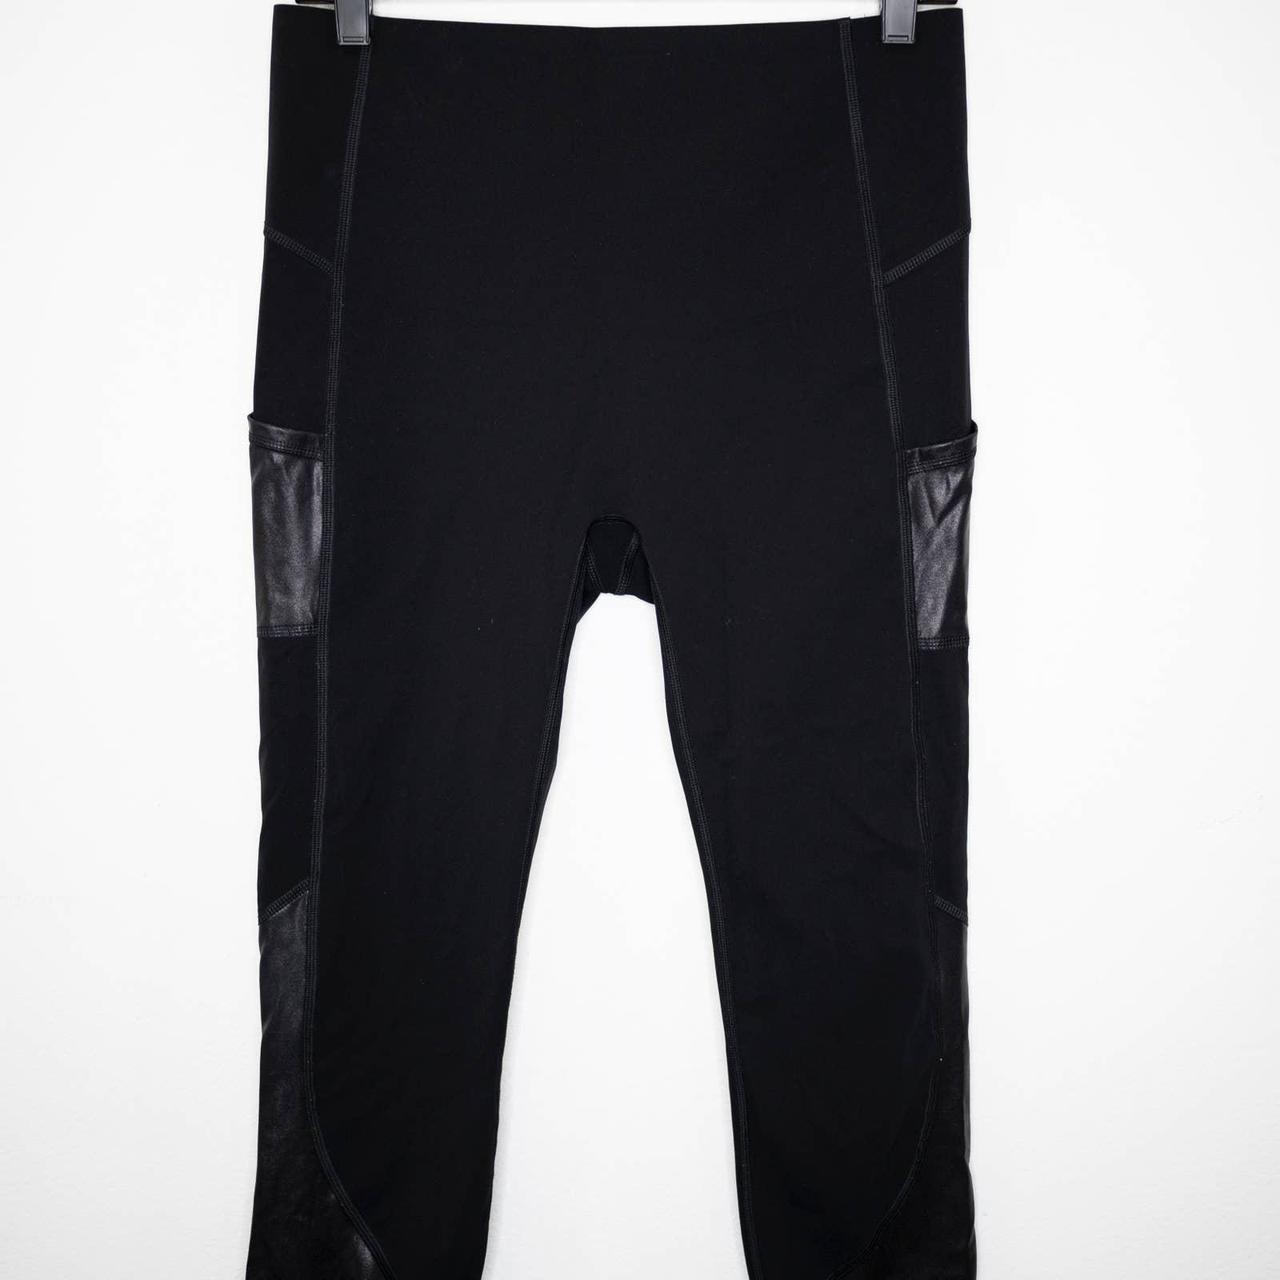 Medium luxform leggings in onyx black from set - Depop